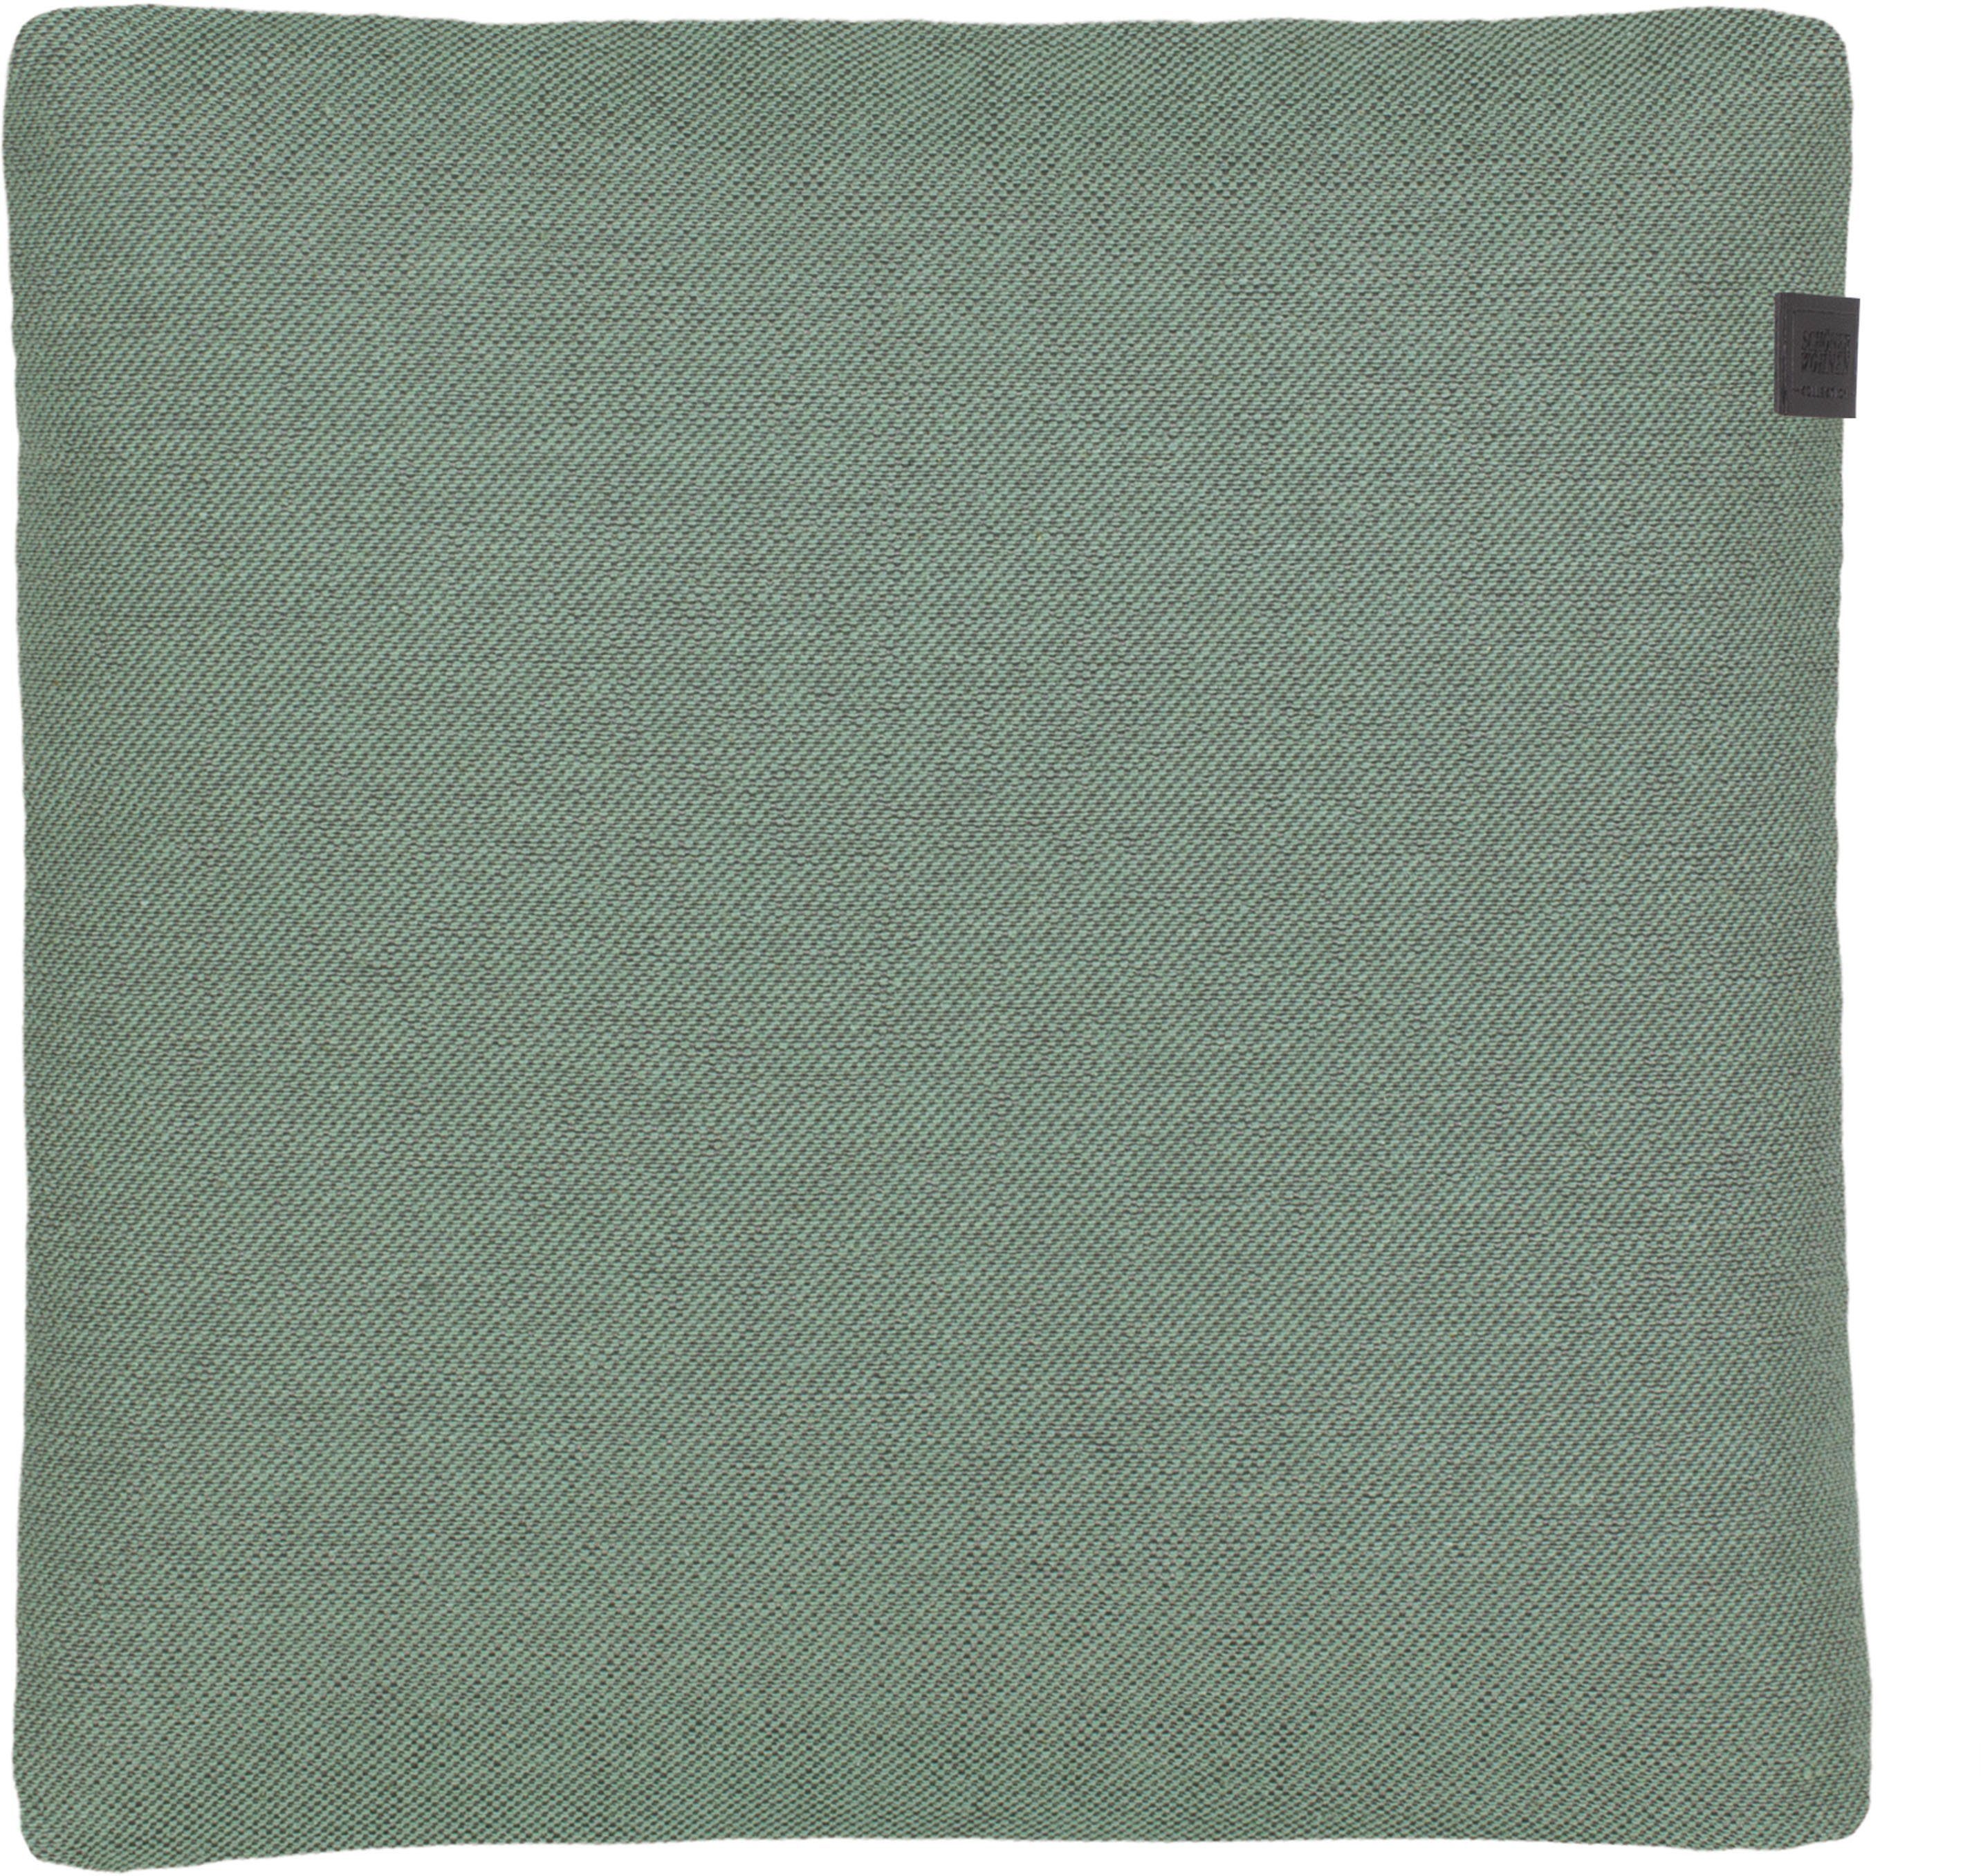 SCHÖNER WOHNEN-Kollektion Dekokissen Solo, 38x38 cm hellgrün